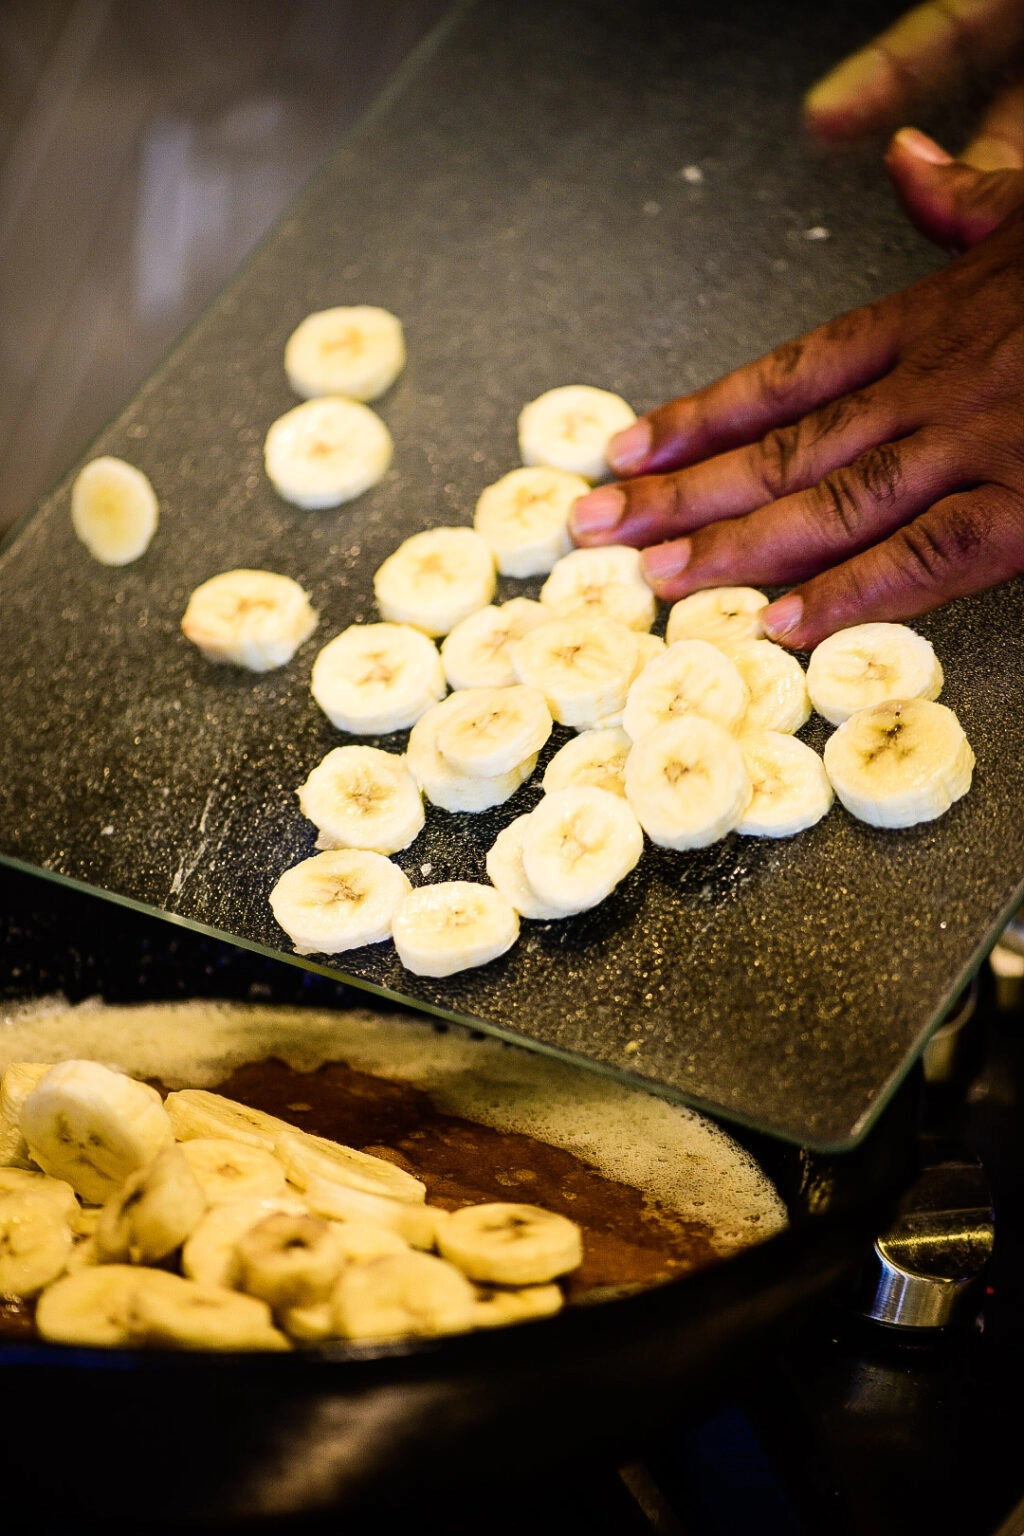 Adding sliced bananas to pan for bananas foster.